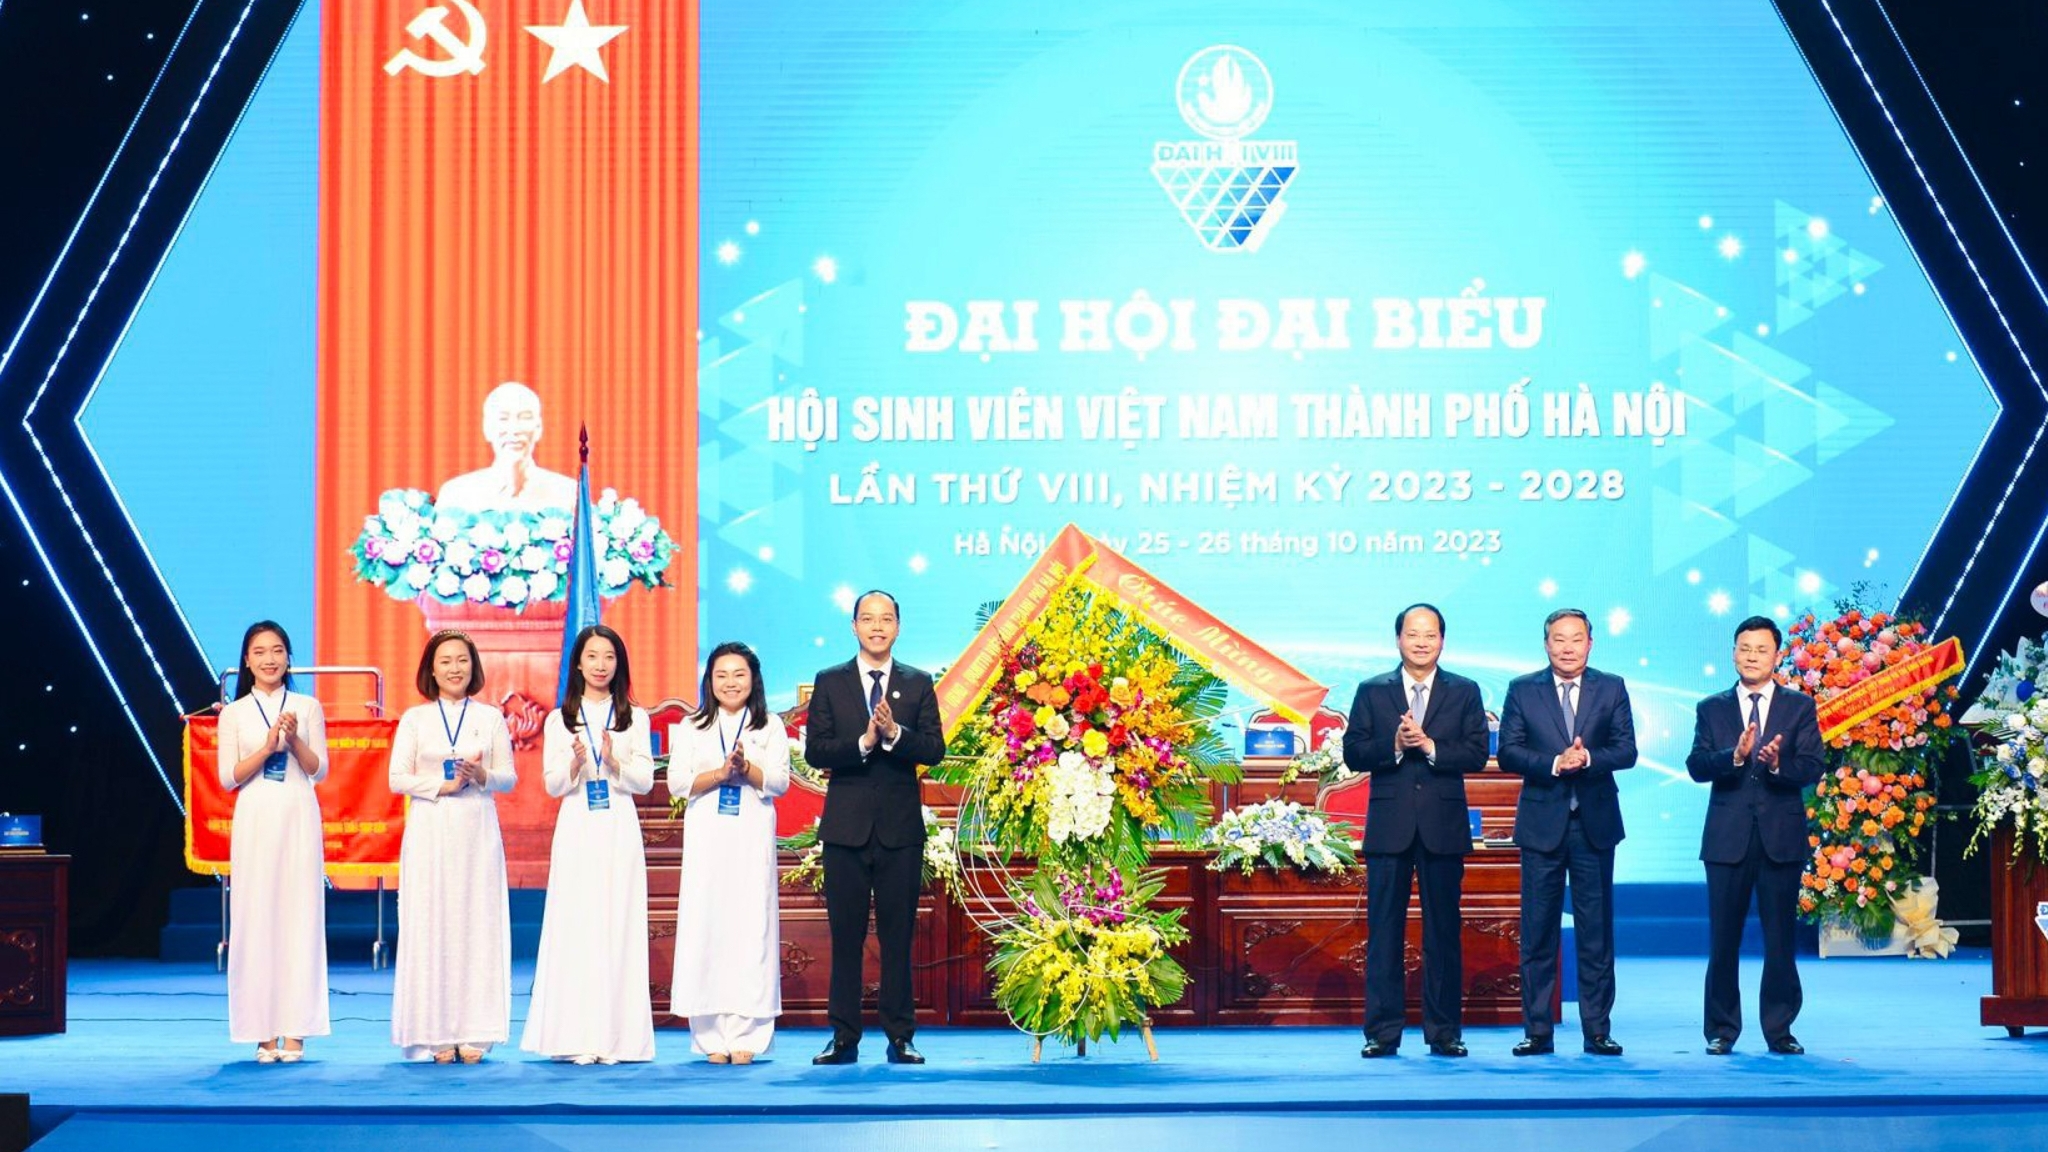 Toàn cảnh Ðại hội đại biểu Hội Sinh viên Việt Nam TP Hà Nội lần thứ 8